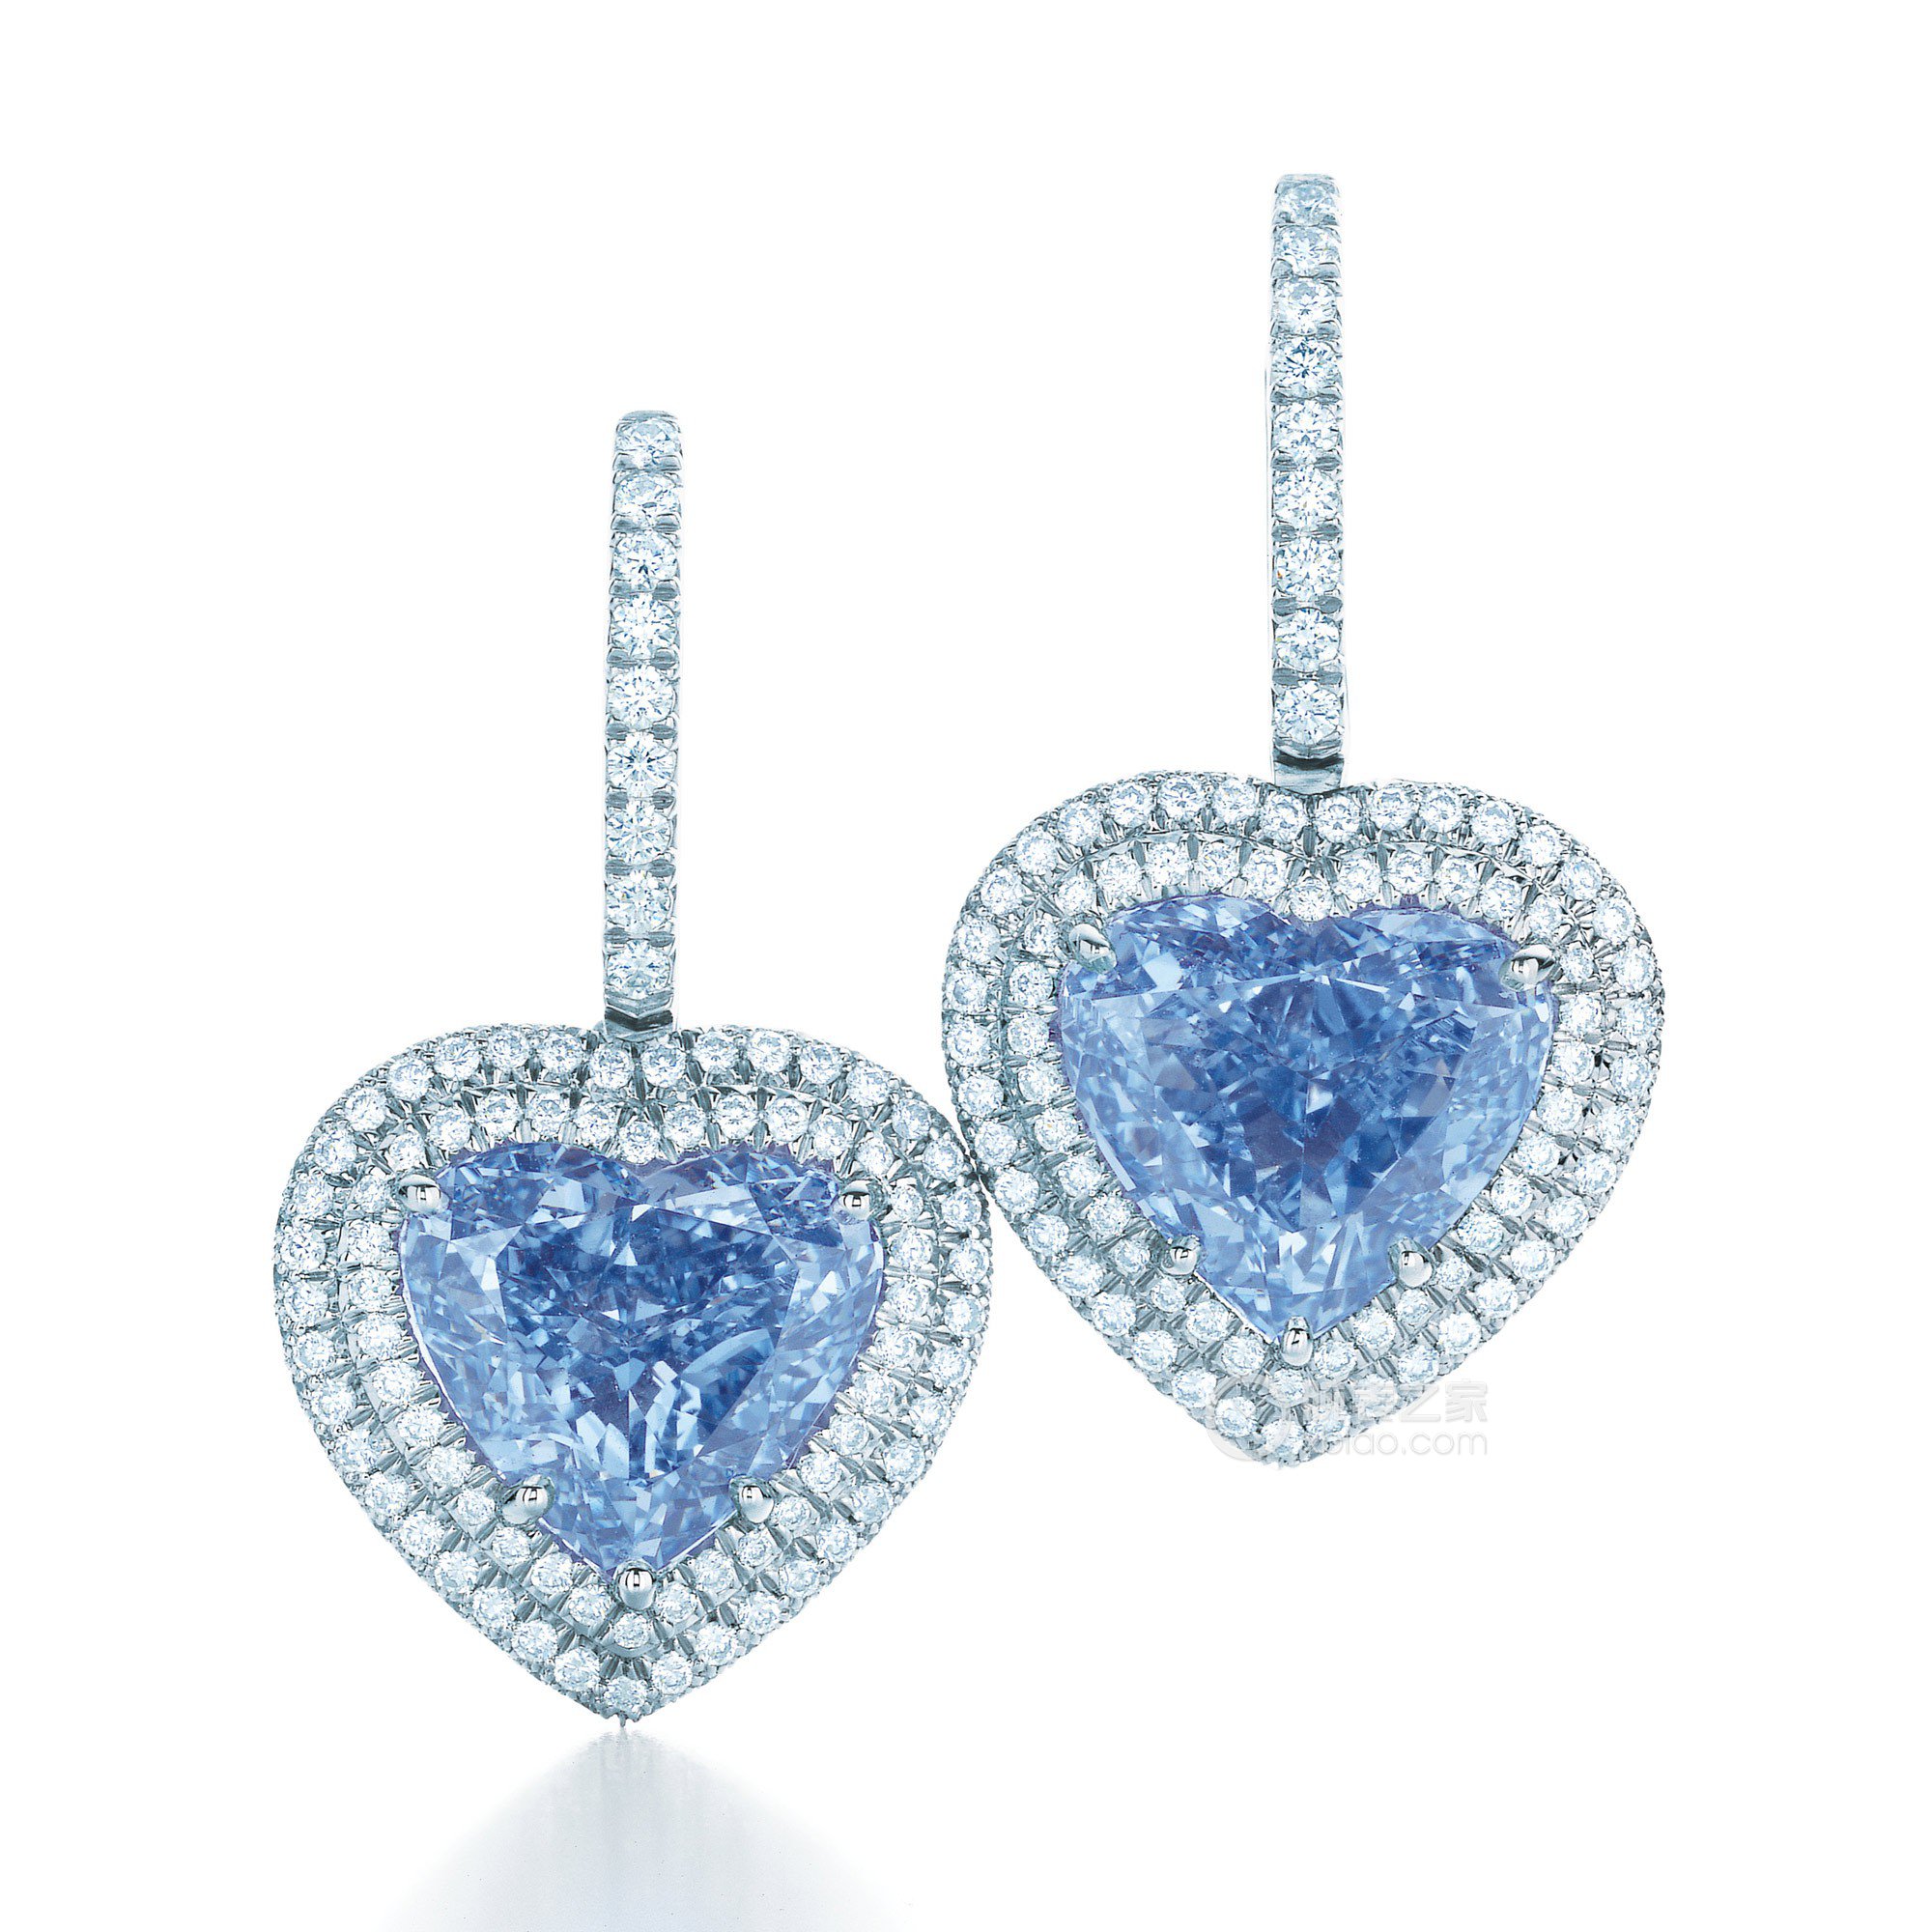 拍卖史上最大艳彩蓝钻15.10克拉艳彩蓝钻 戴比尔斯 库利南 浩宇之蓝将在苏富比上拍